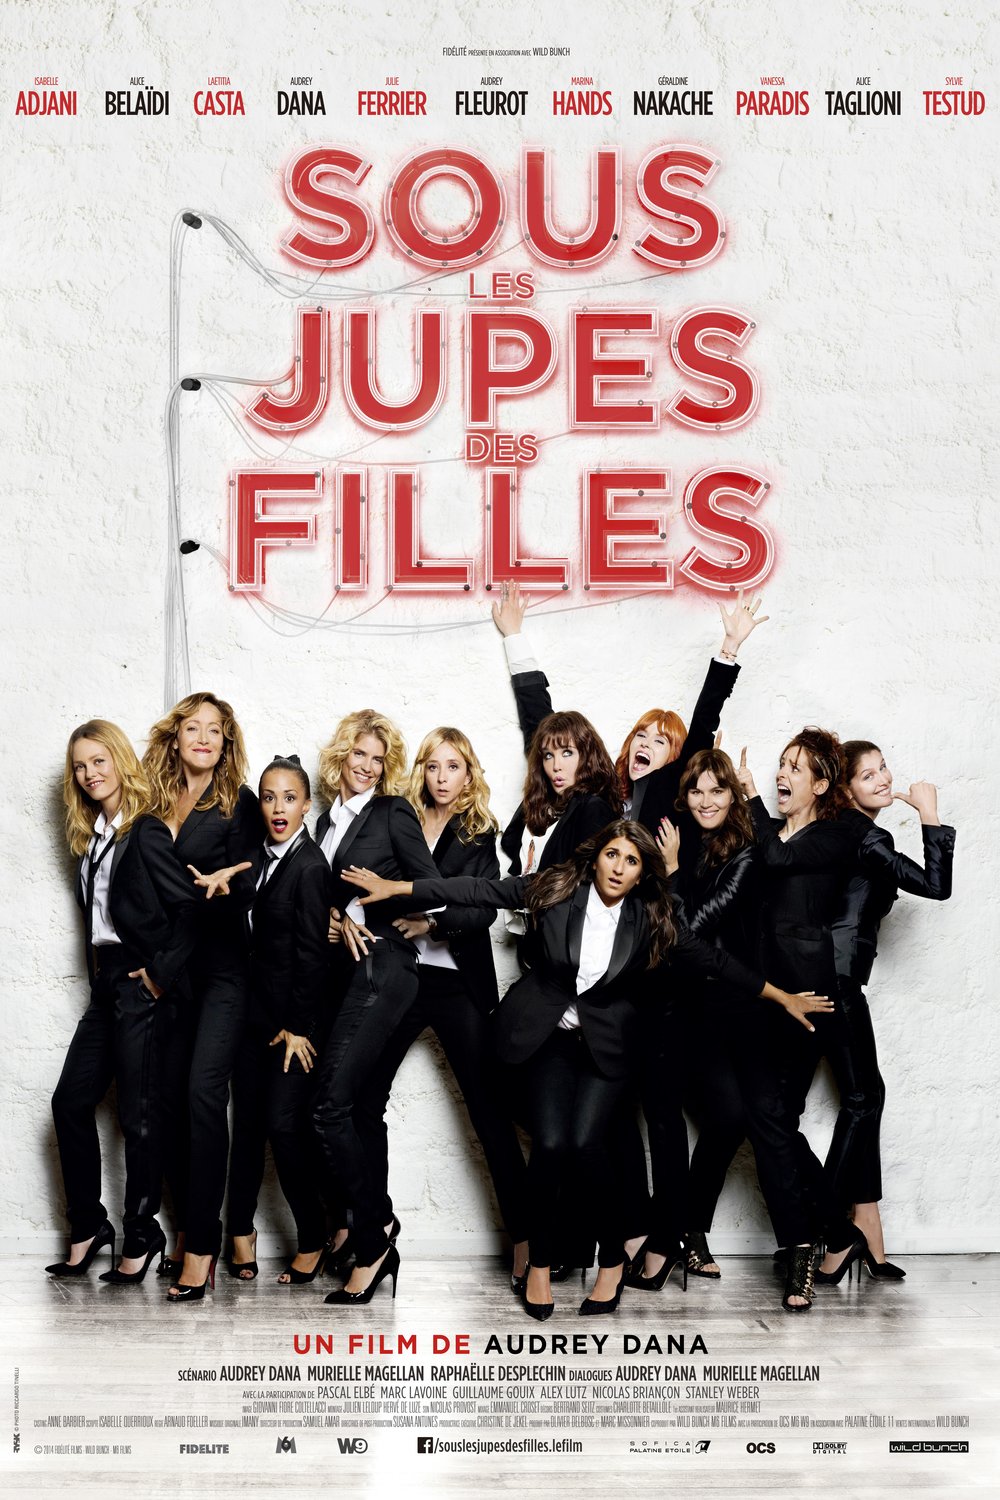 Poster of the movie Sous les jupes des filles